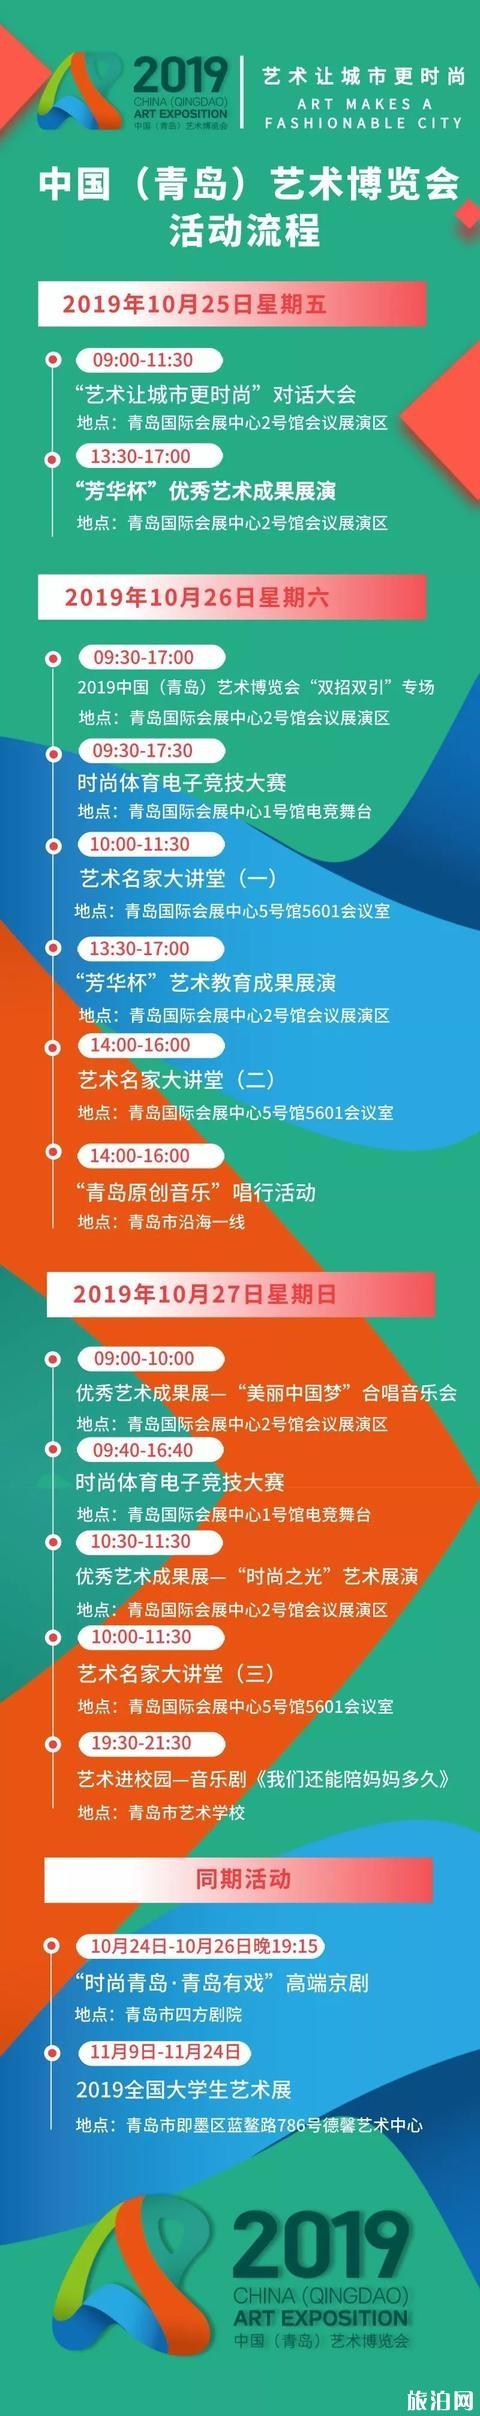 2019青岛艺术博览会10月25日开幕 怎么领票+官网链接